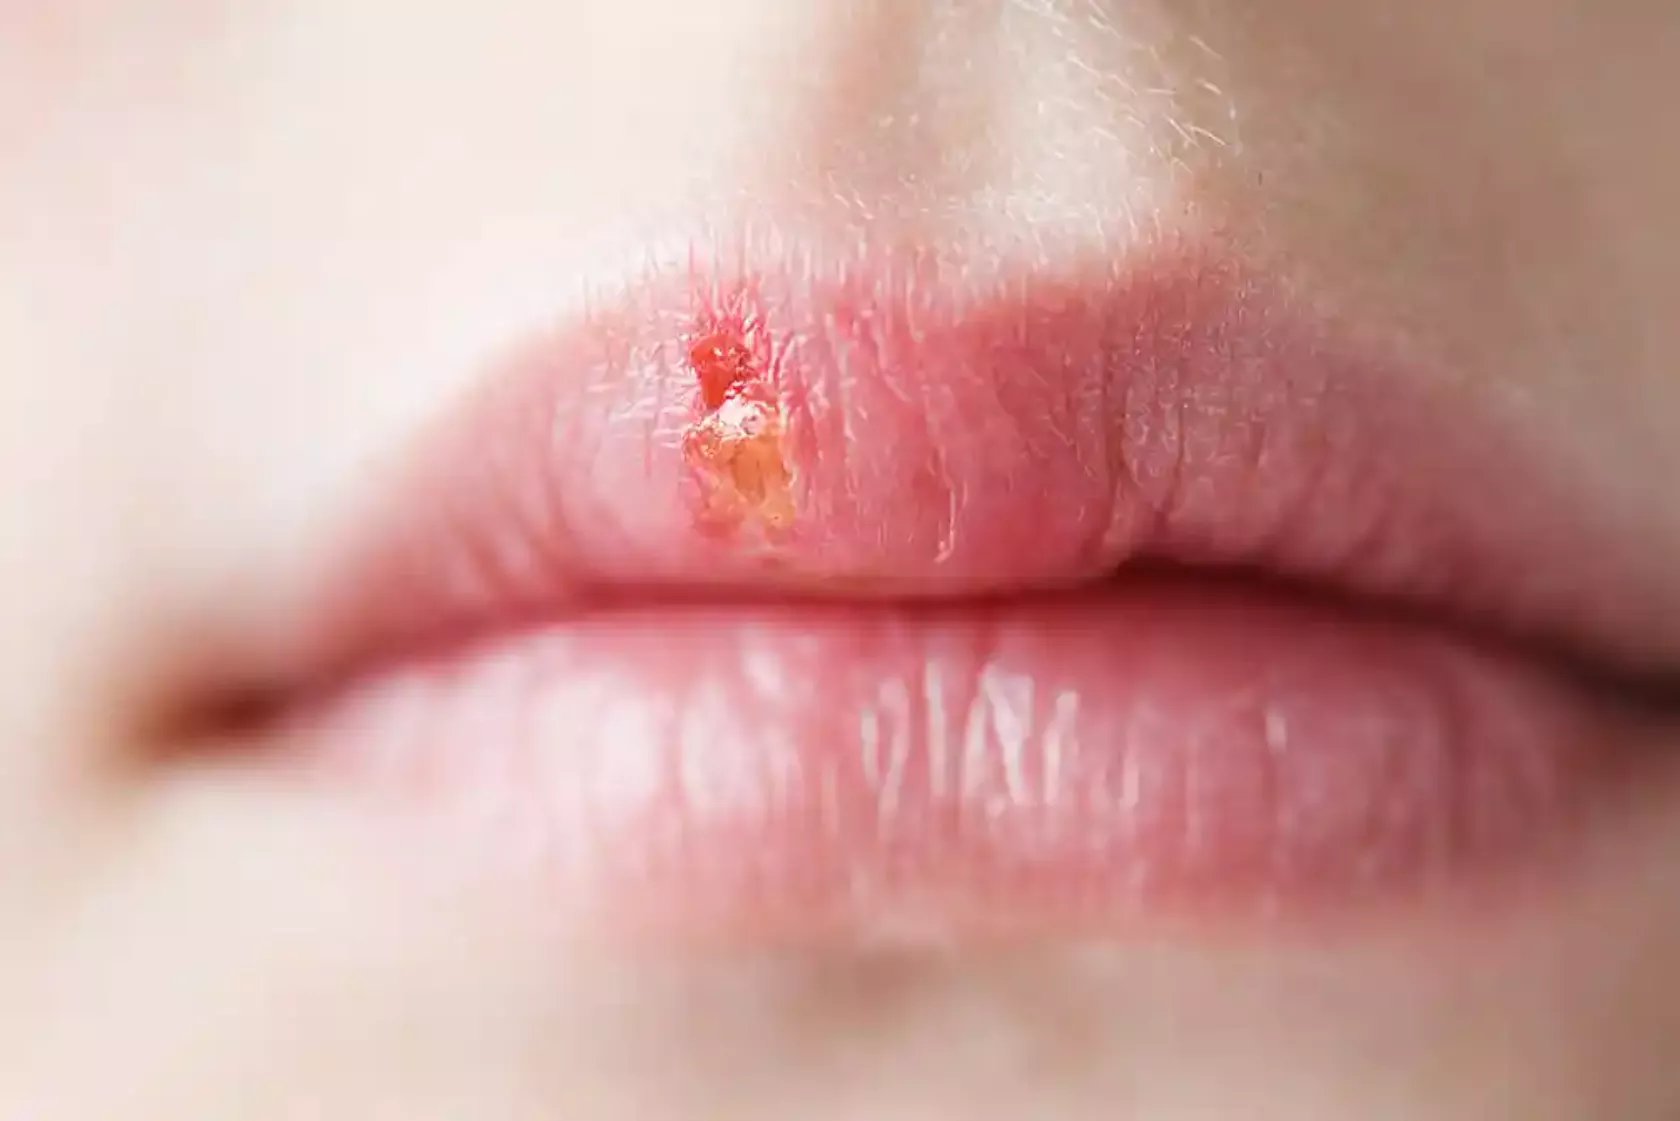 Lippen mit Herpes simplex (Bläschen)